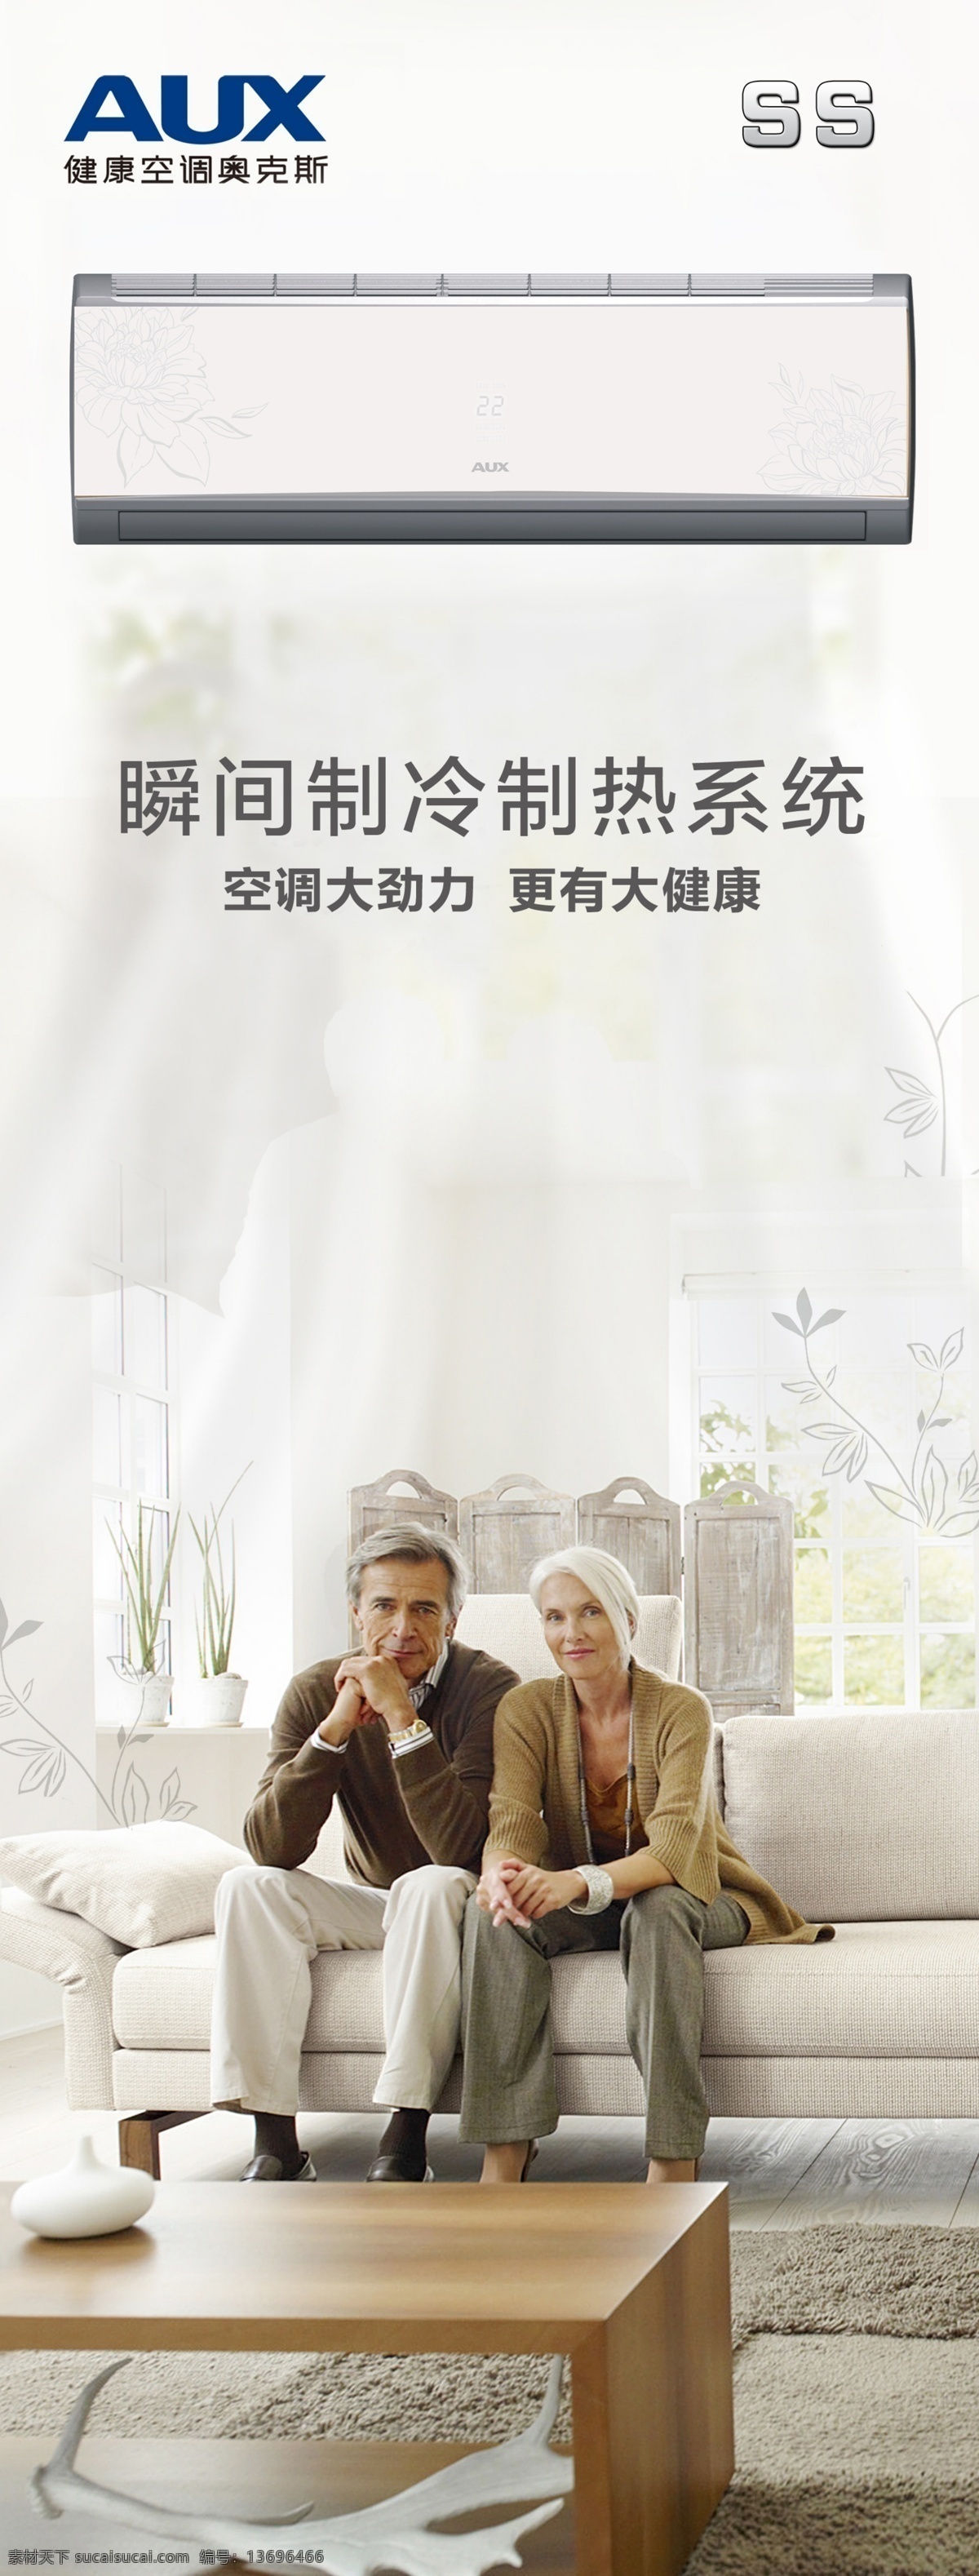 奥克斯空调 舒适 房间 室内 桌子 沙发 夫妇 外国夫妇 制冷 广告 展架 海报